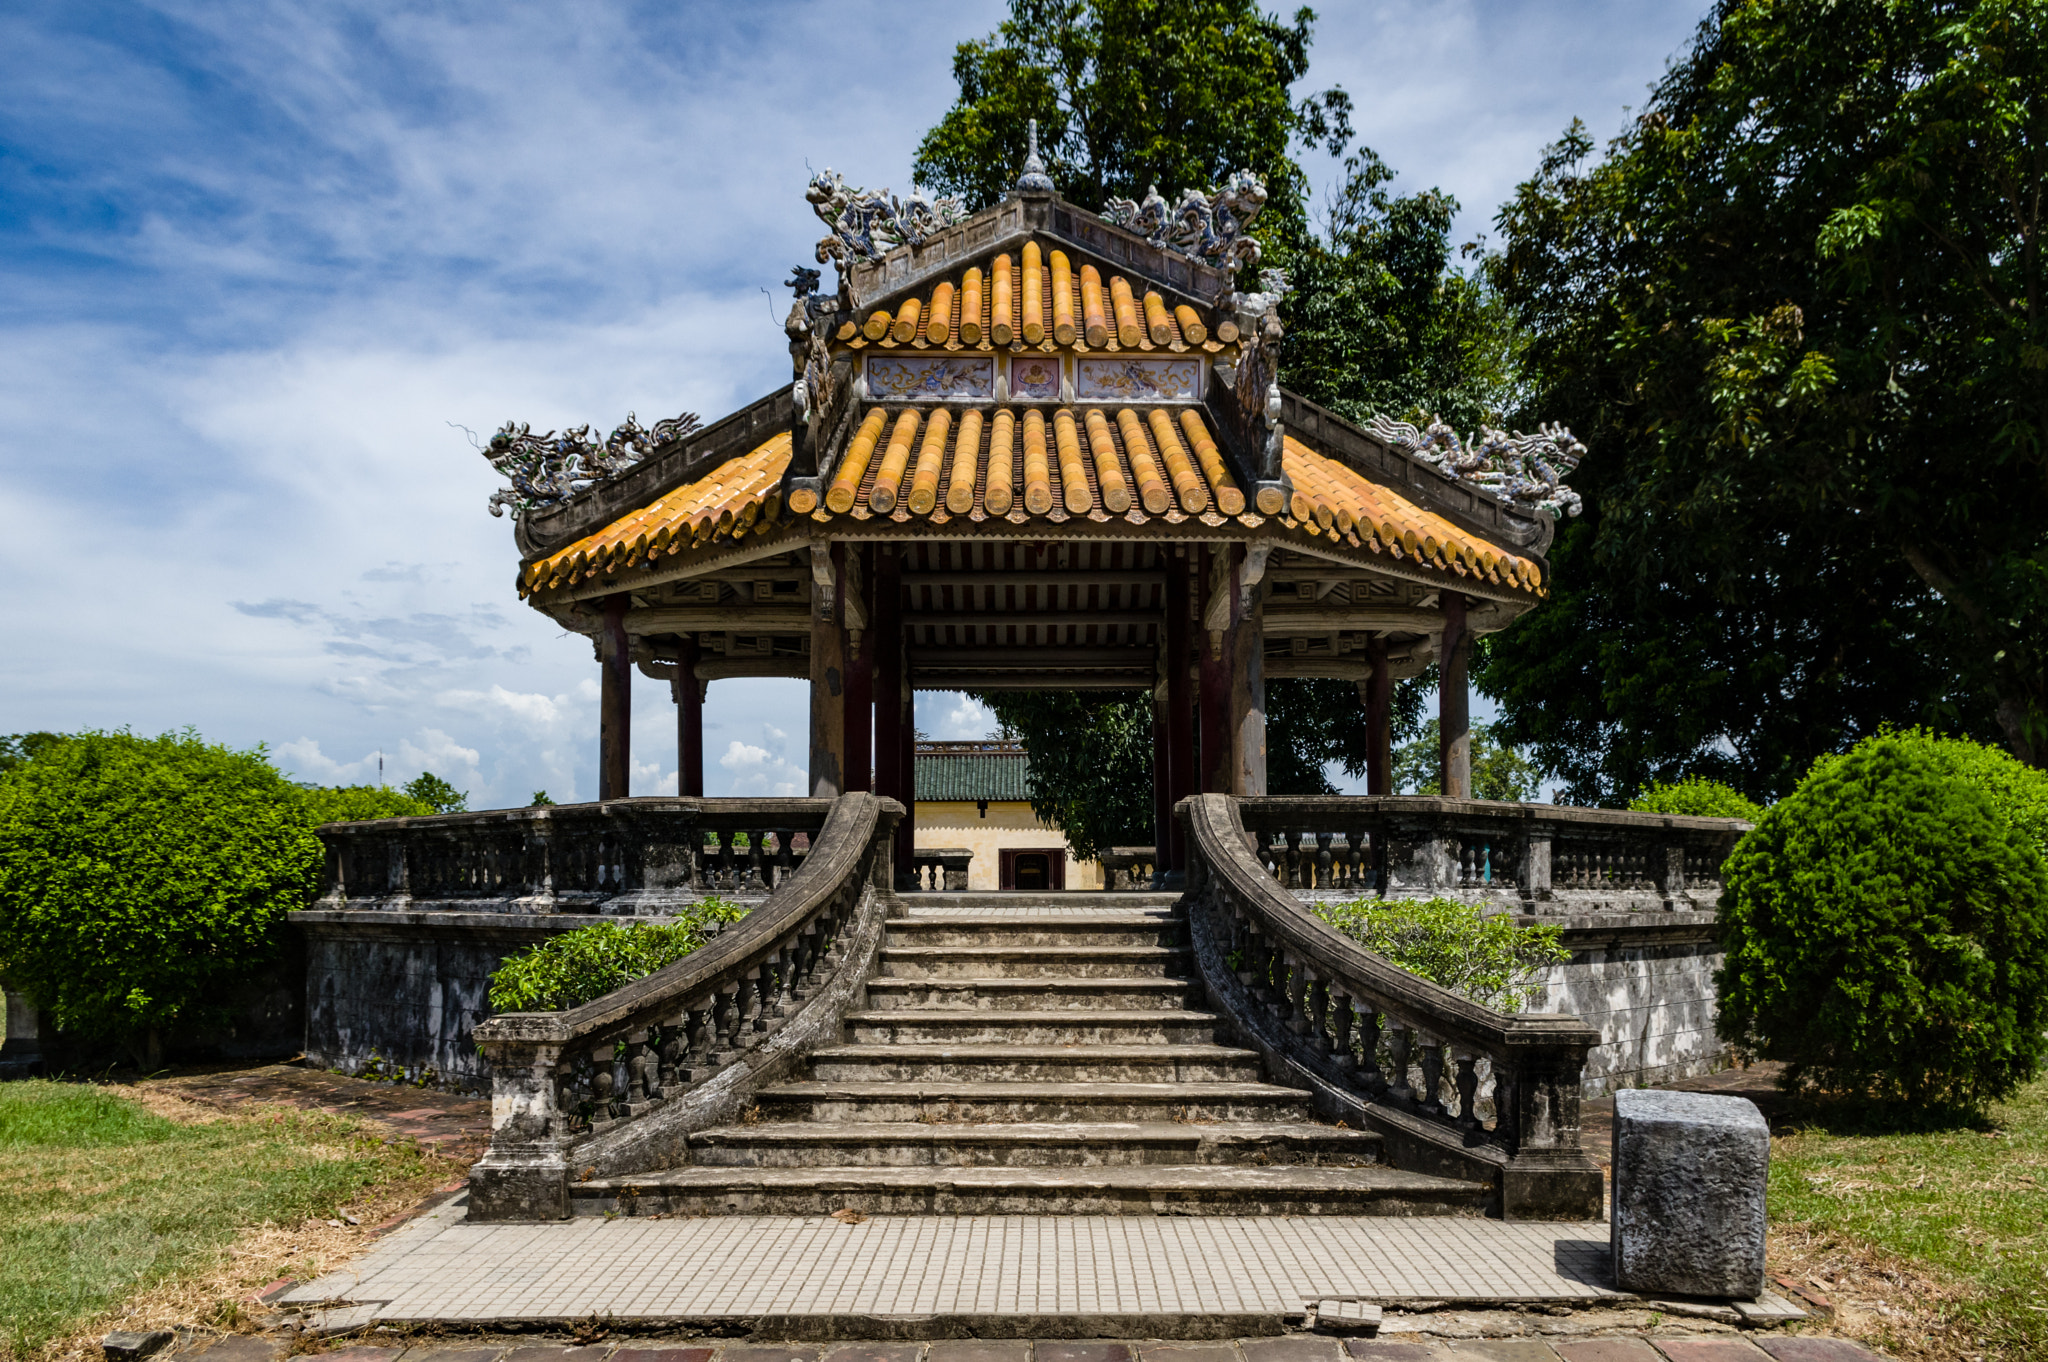 Pentax K-3 sample photo. Pavillon dans les jardins de la cité impériale de hué au vietnam photography